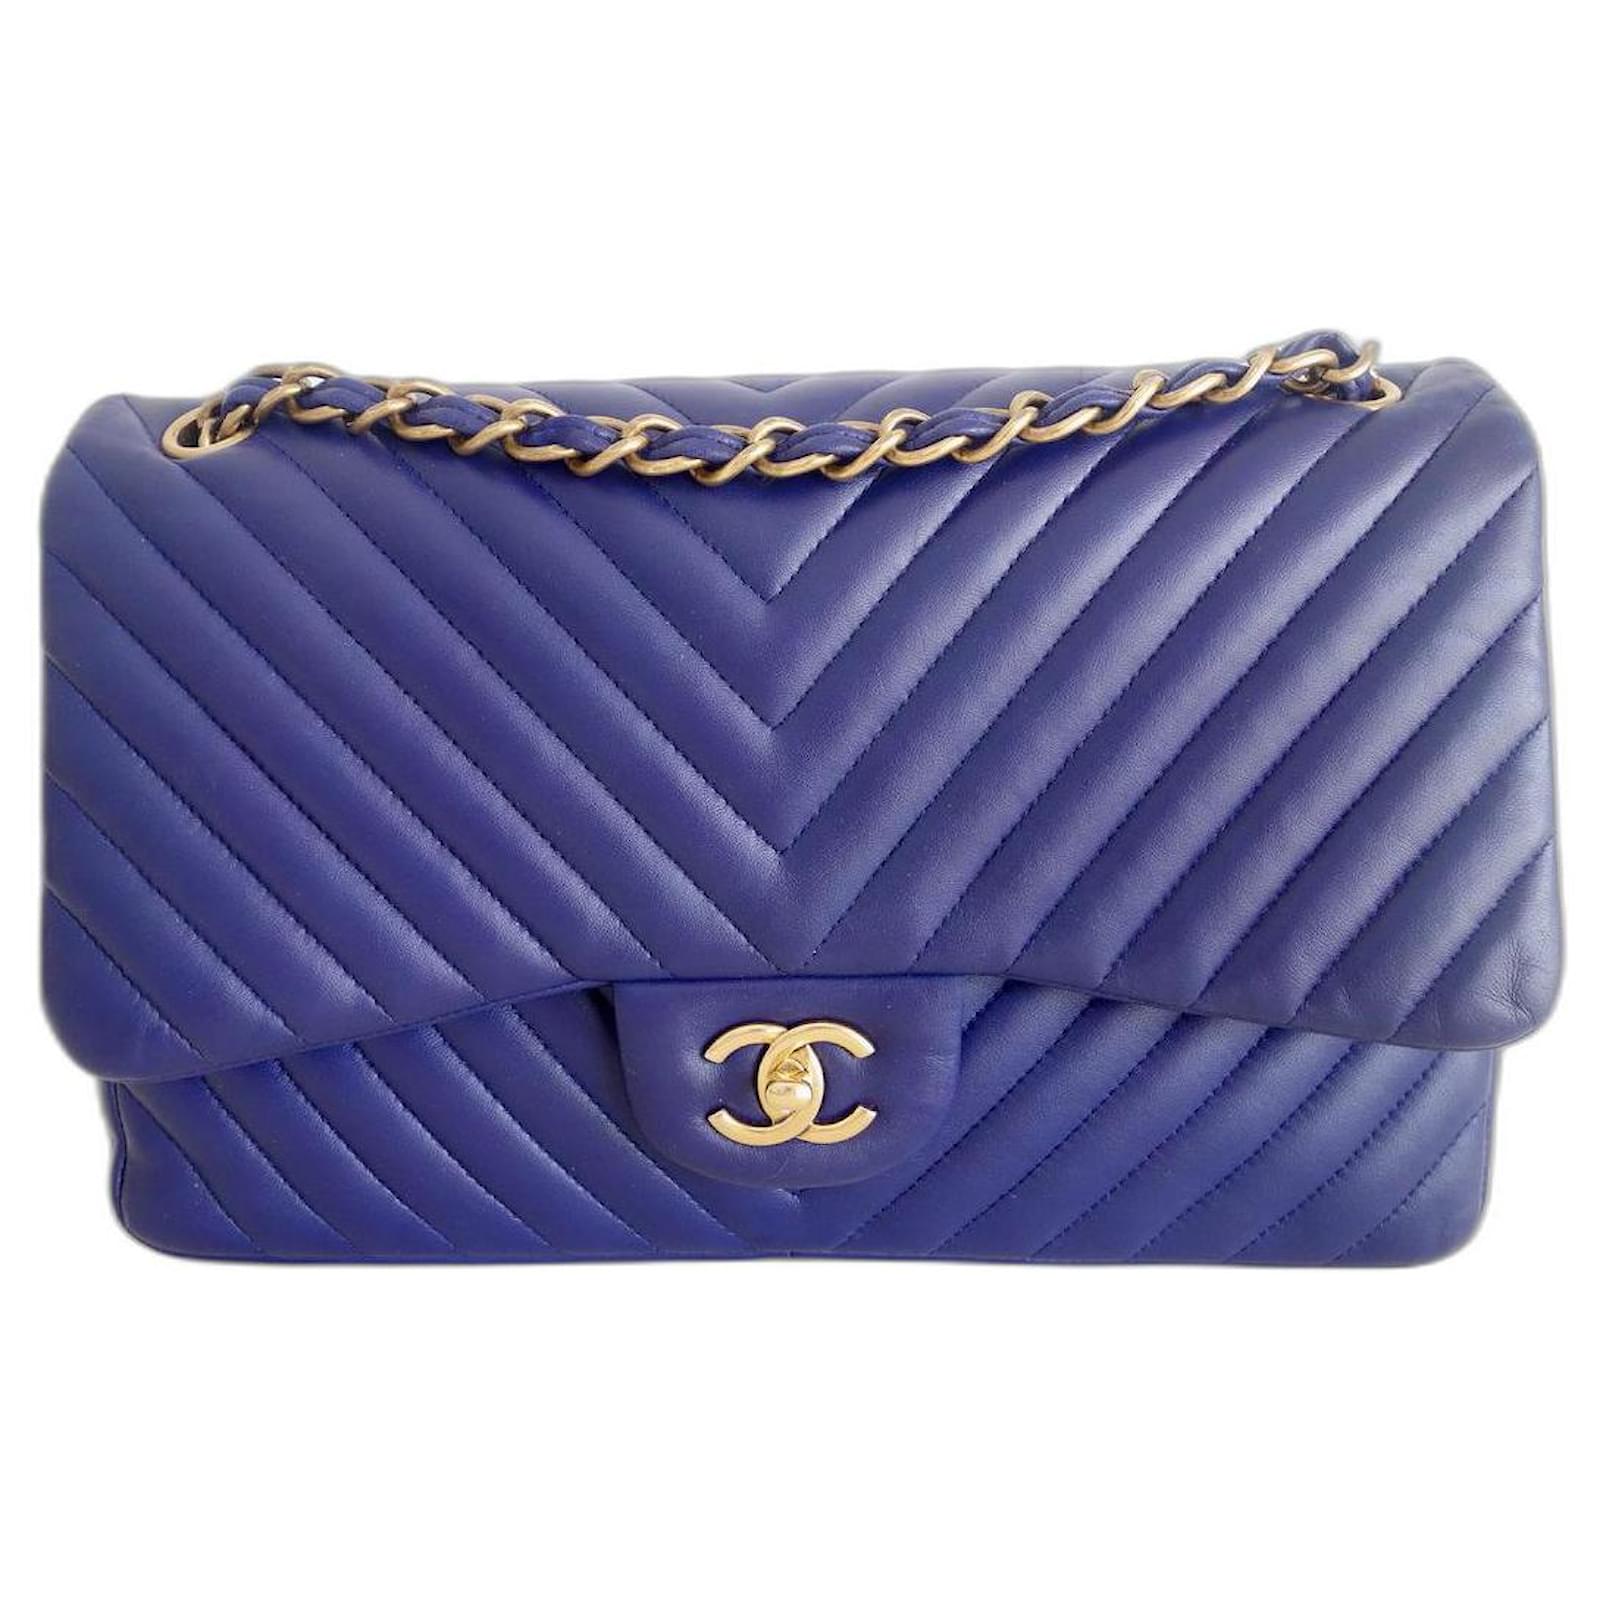 Handbags Chanel Chanel Classic Chevron Bag